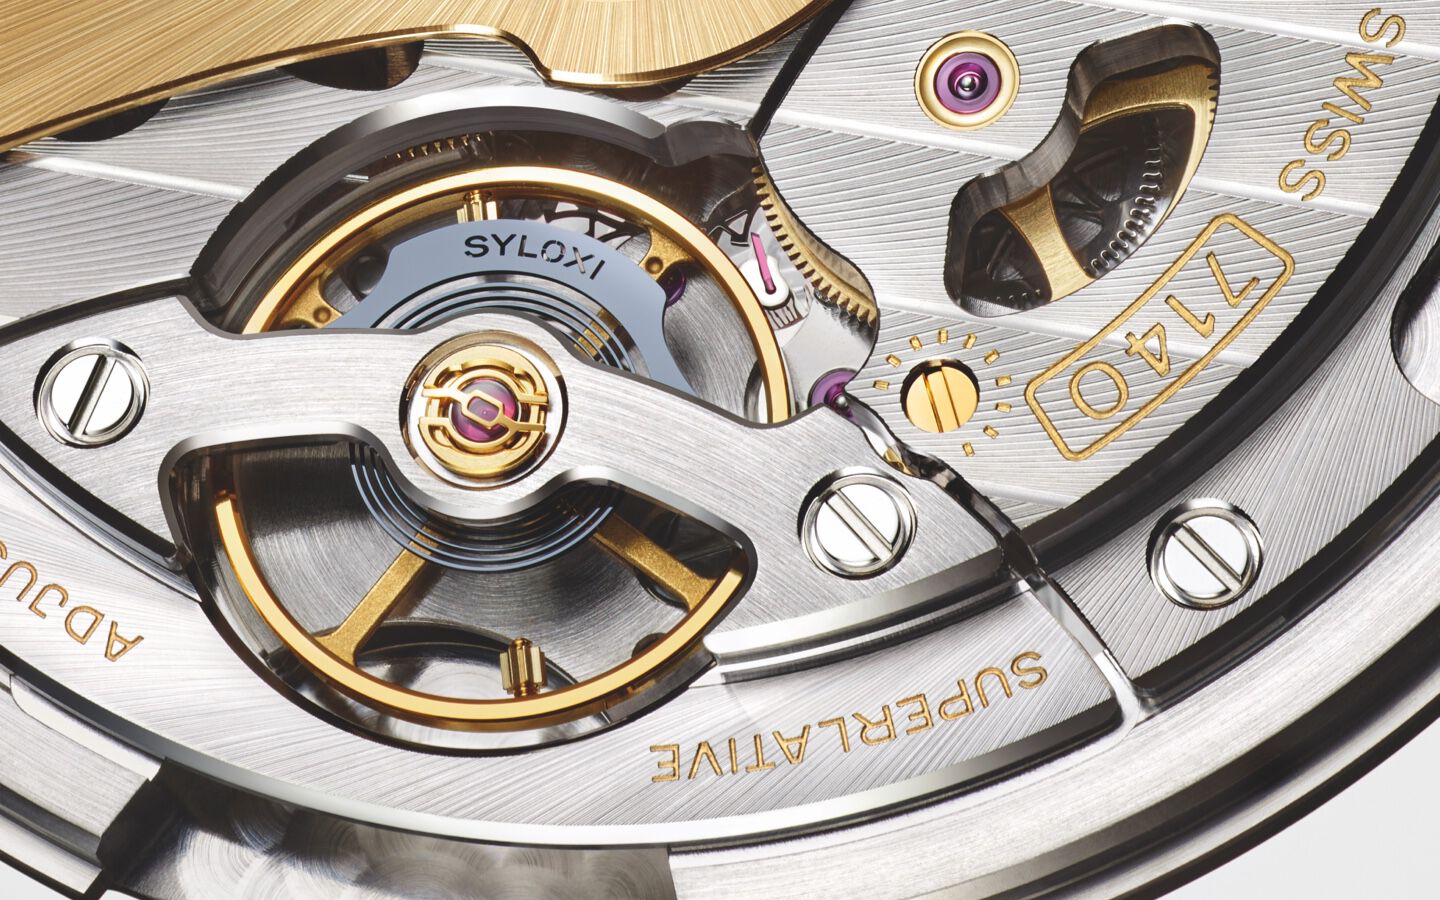 close up of Rolex calibre 7140 movement. 